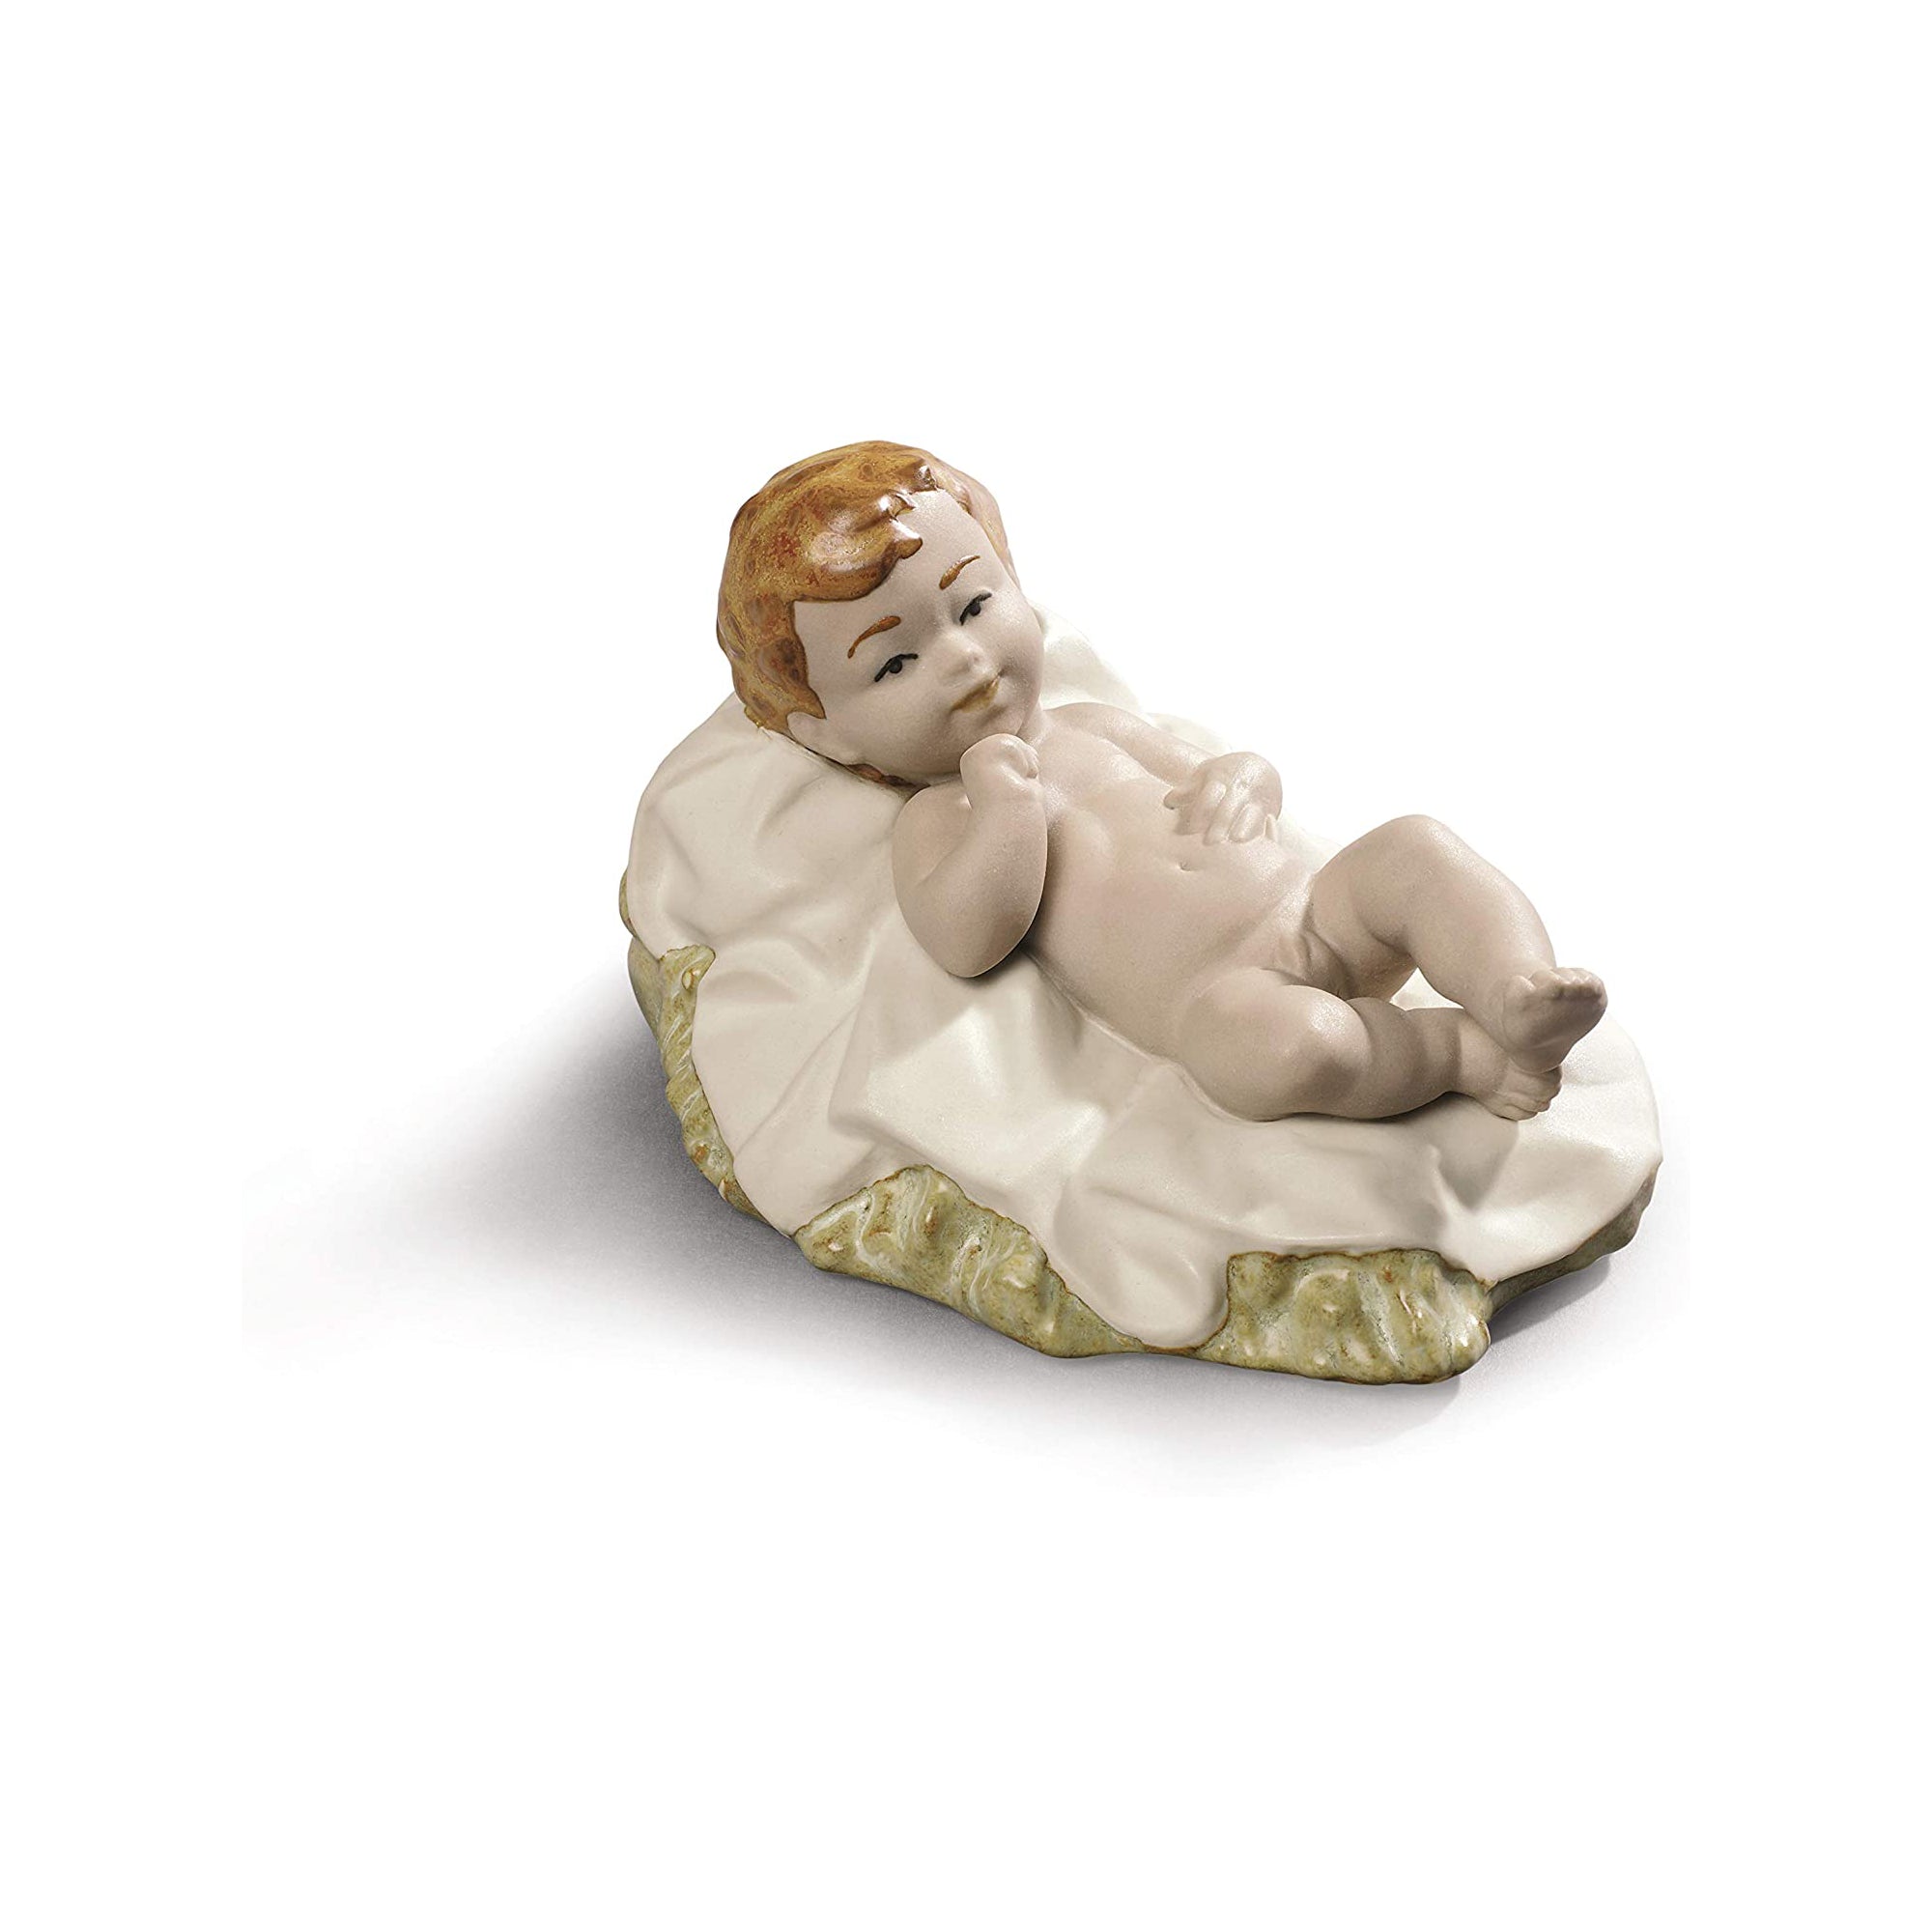 NAO Figura Statuina Natività Gesù Bambino 6x10cm Porcellana Natale 02012020